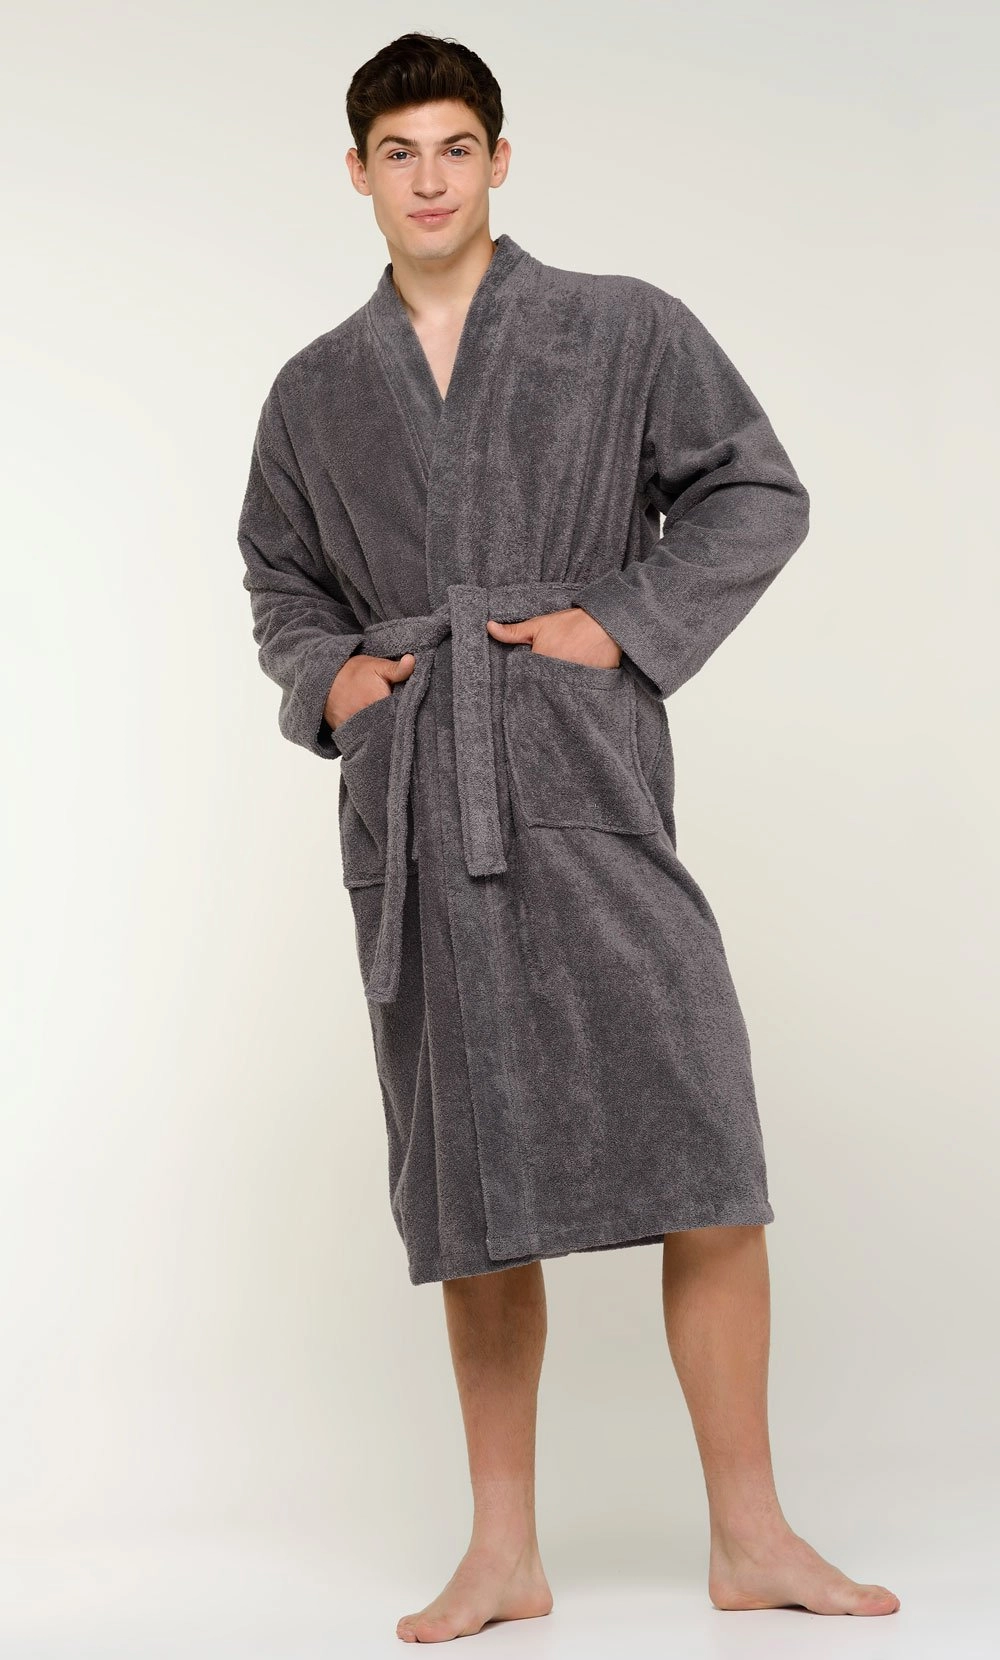 Towel Wrap Towels :: 100% Cotton White Terry Velour Cloth Spa Wrap, Bath  Towel Wrap - Wholesale bathrobes, Spa robes, Kids robes, Cotton robes, Spa  Slippers, Wholesale Towels